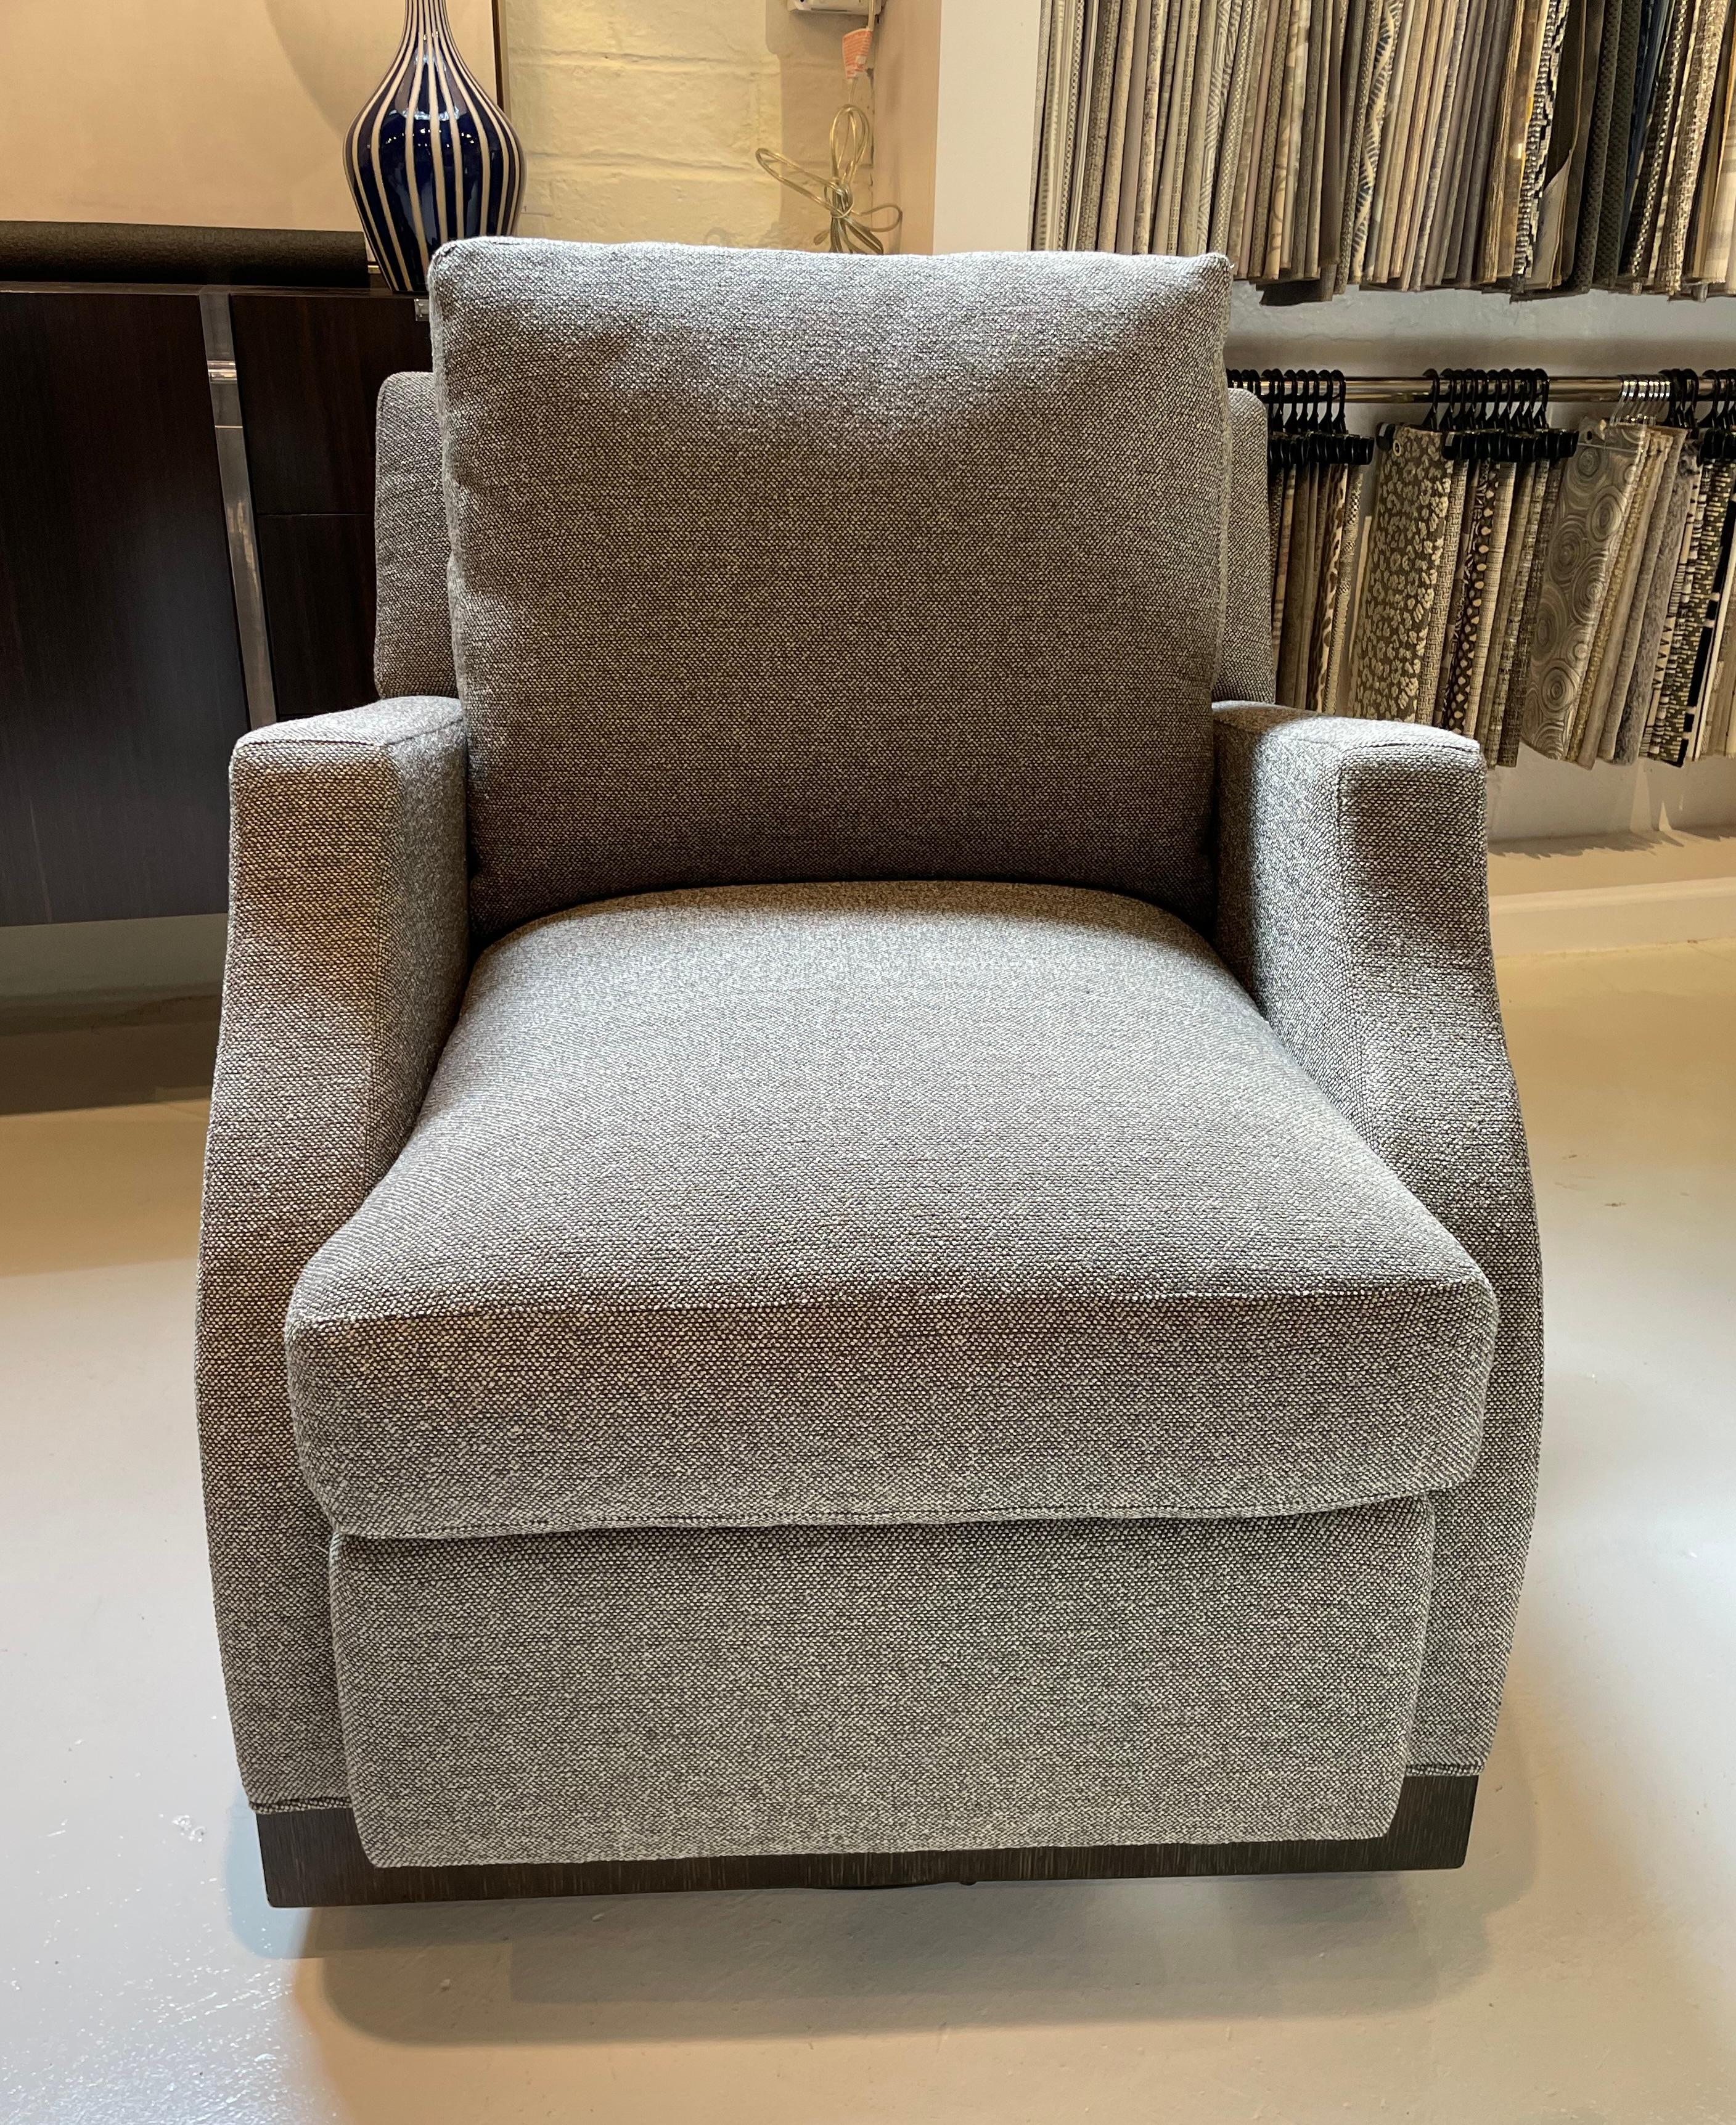 La chaise pivotante Wilshire est élégante et confortable, avec un pivotement à 360 degrés.  Le Design/One se prête à un environnement contemporain, transitionnel ou traditionnel.  Idéal pour le salon, la salle familiale, la chambre à coucher ou un